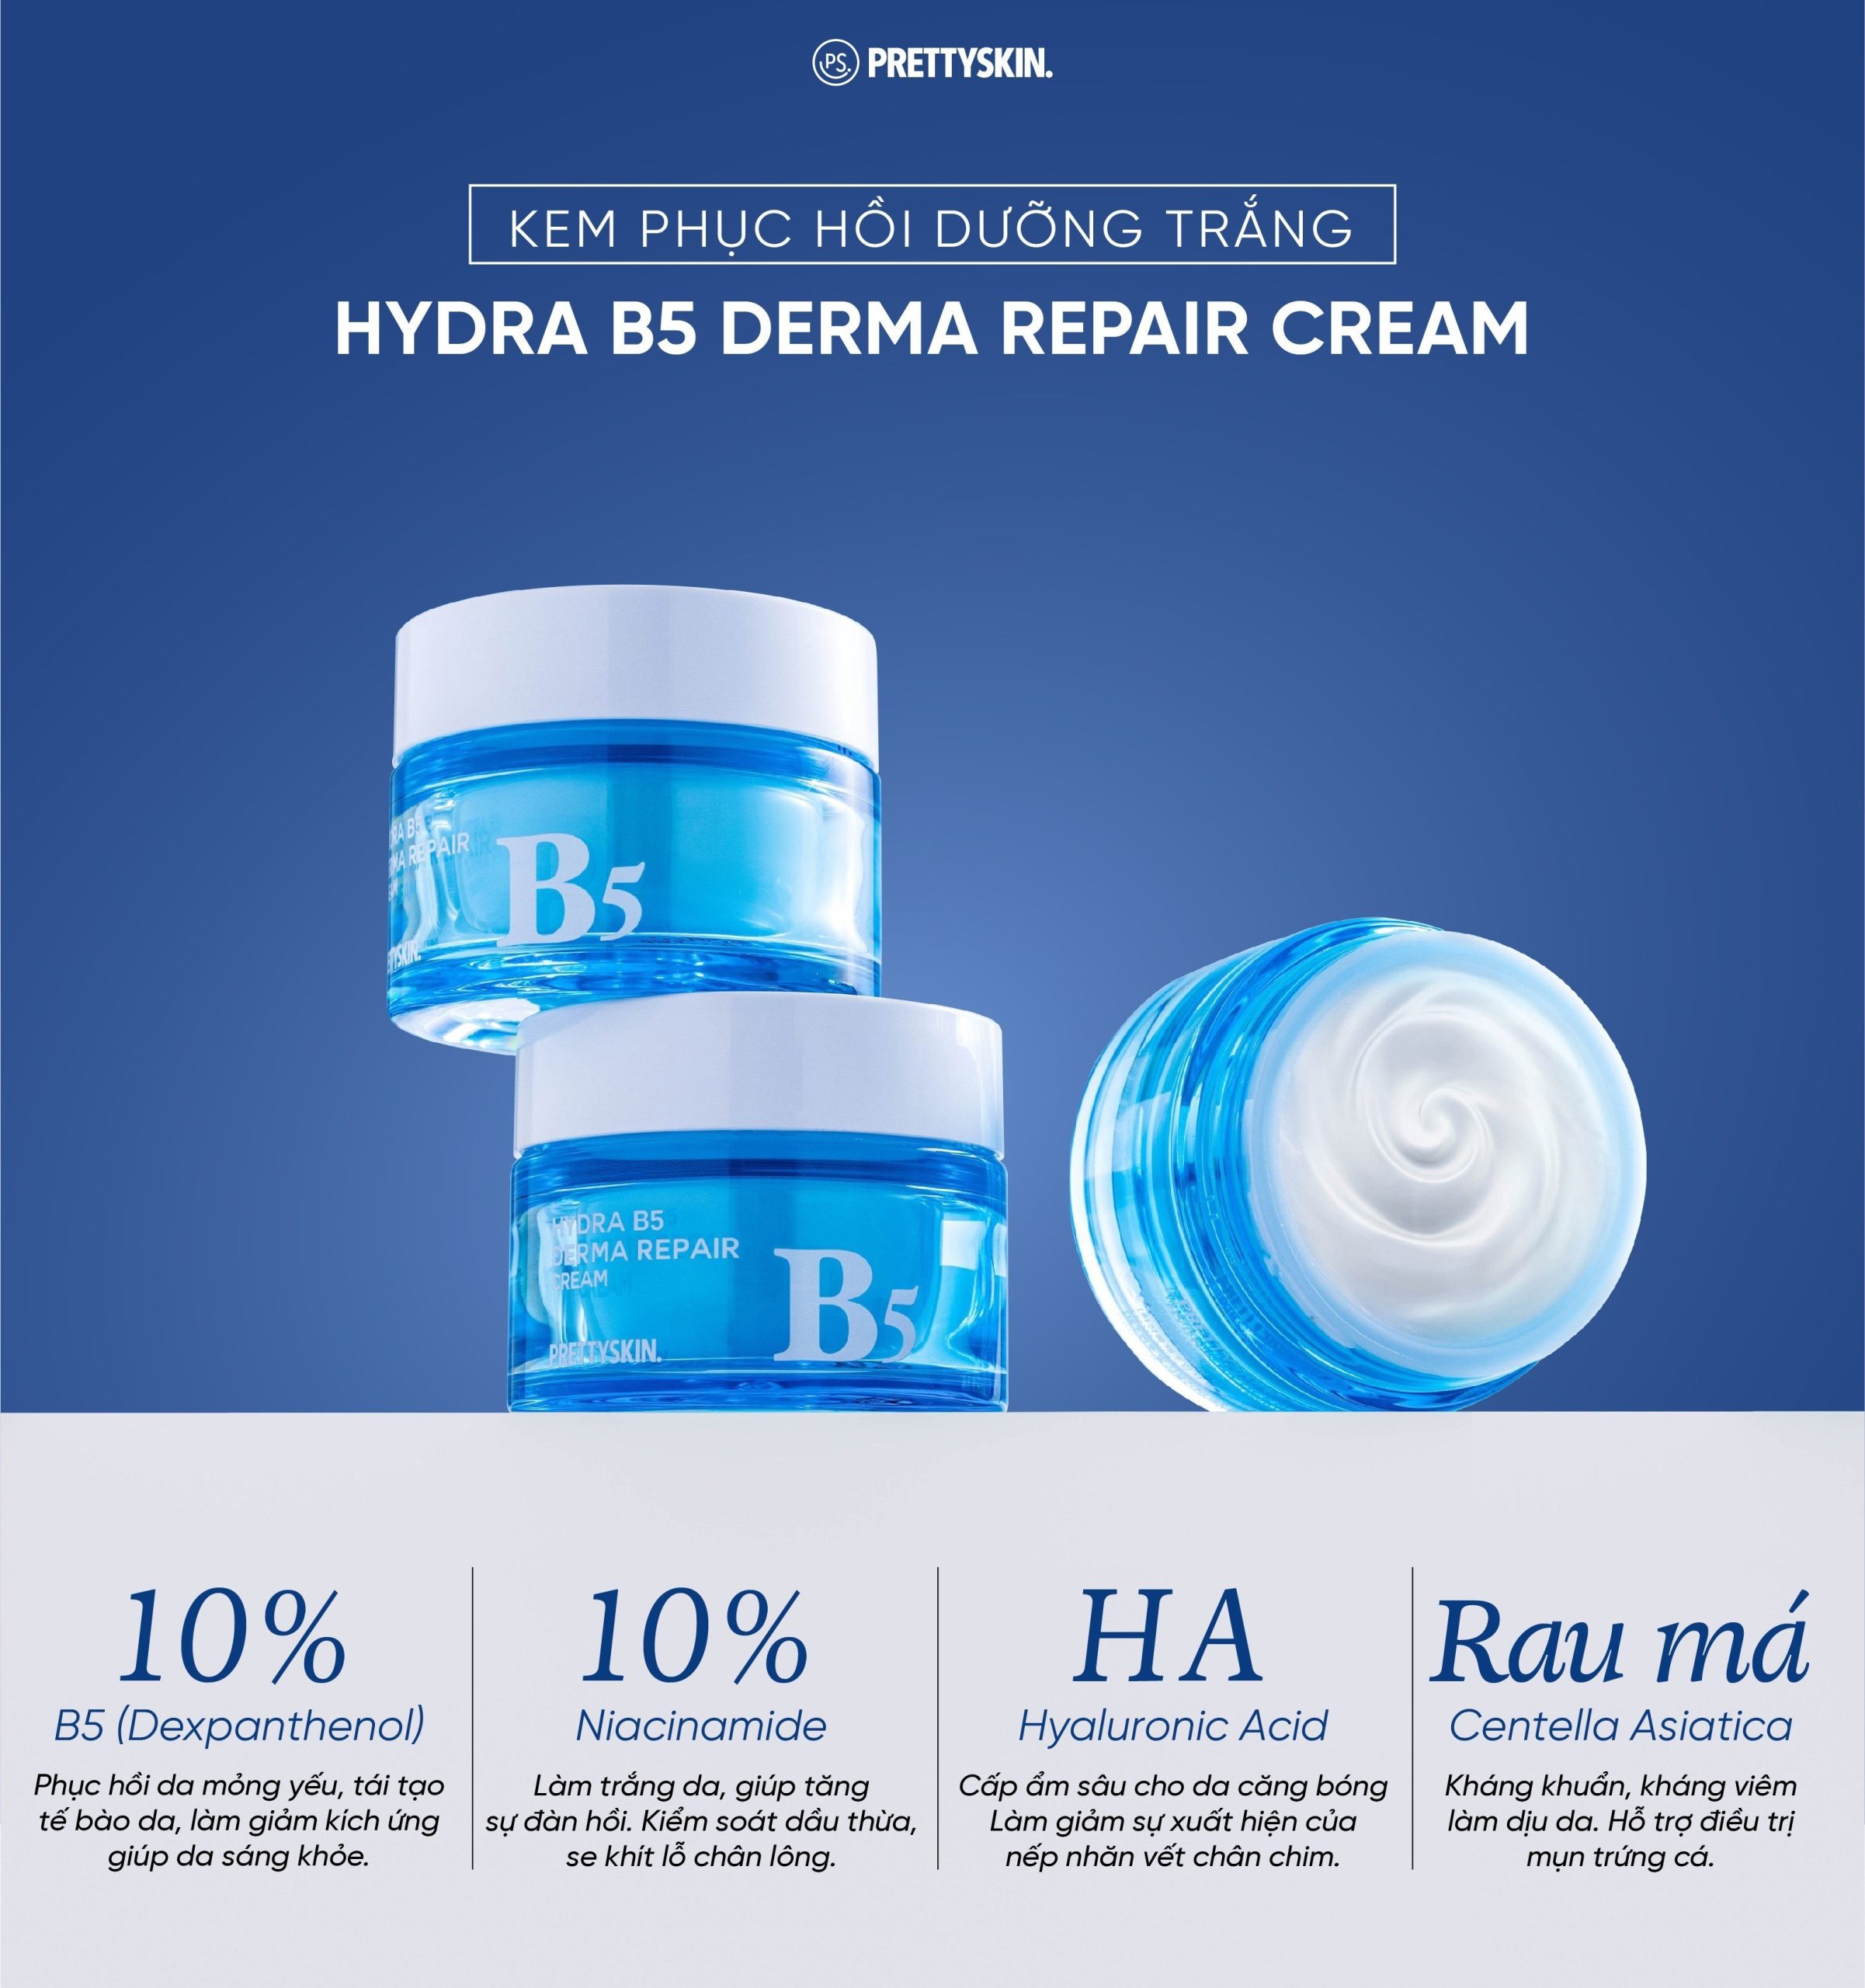 Kem dưỡng phục hồi dưỡng trắng Hydra B5